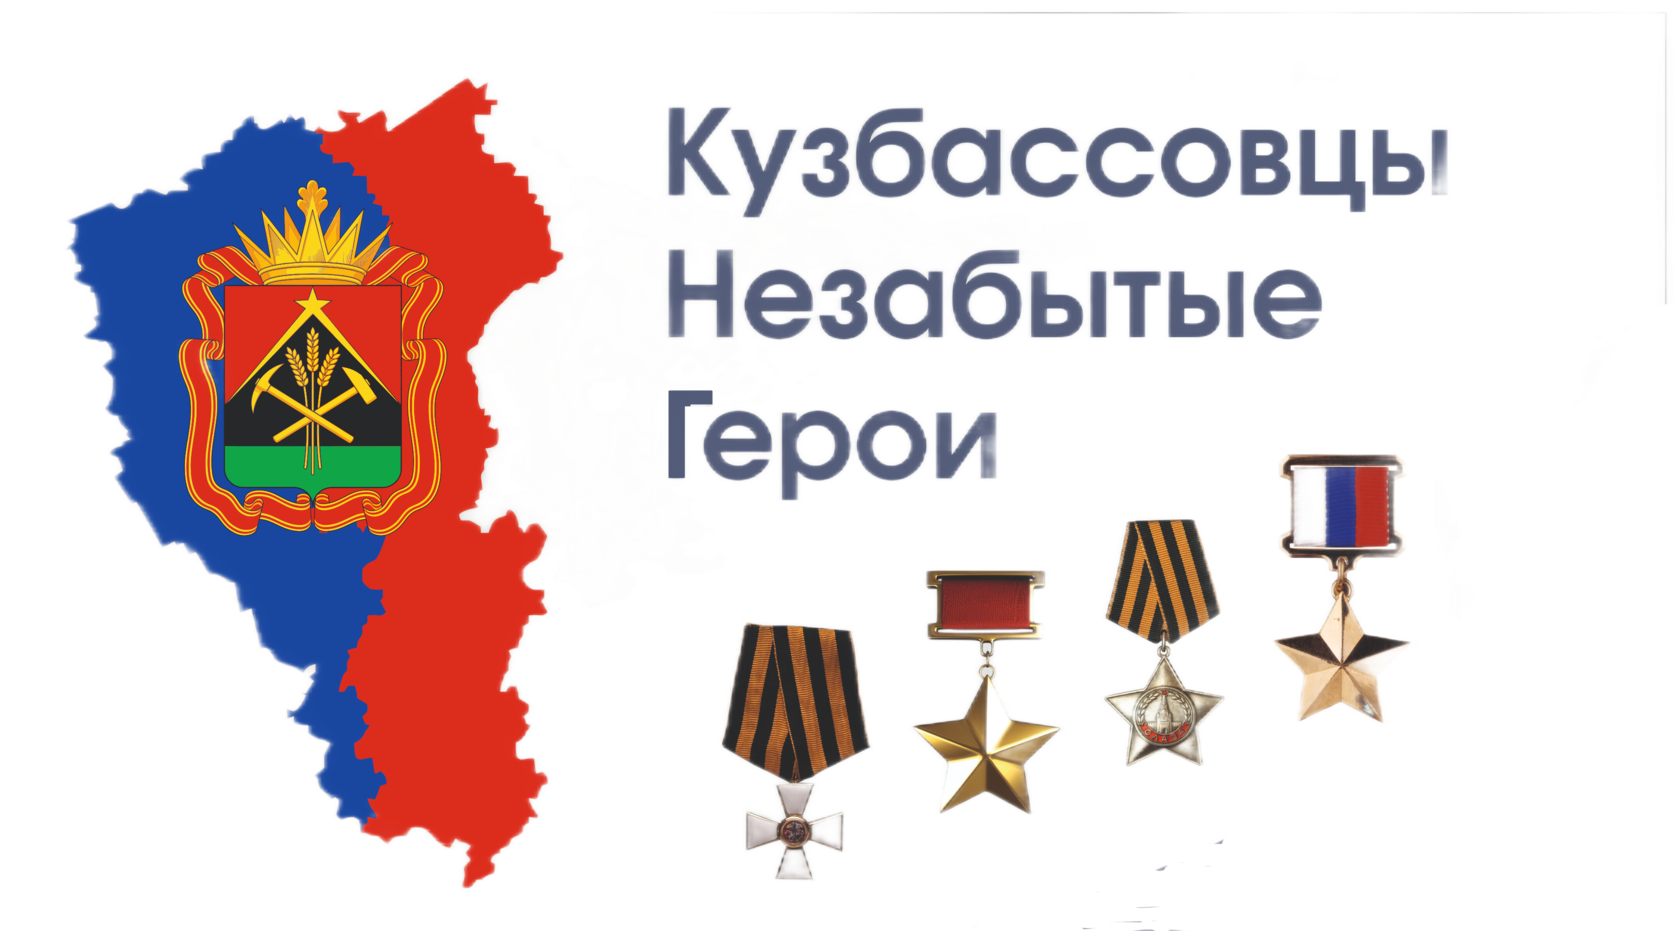 Кузбассовцы - незабытые герои